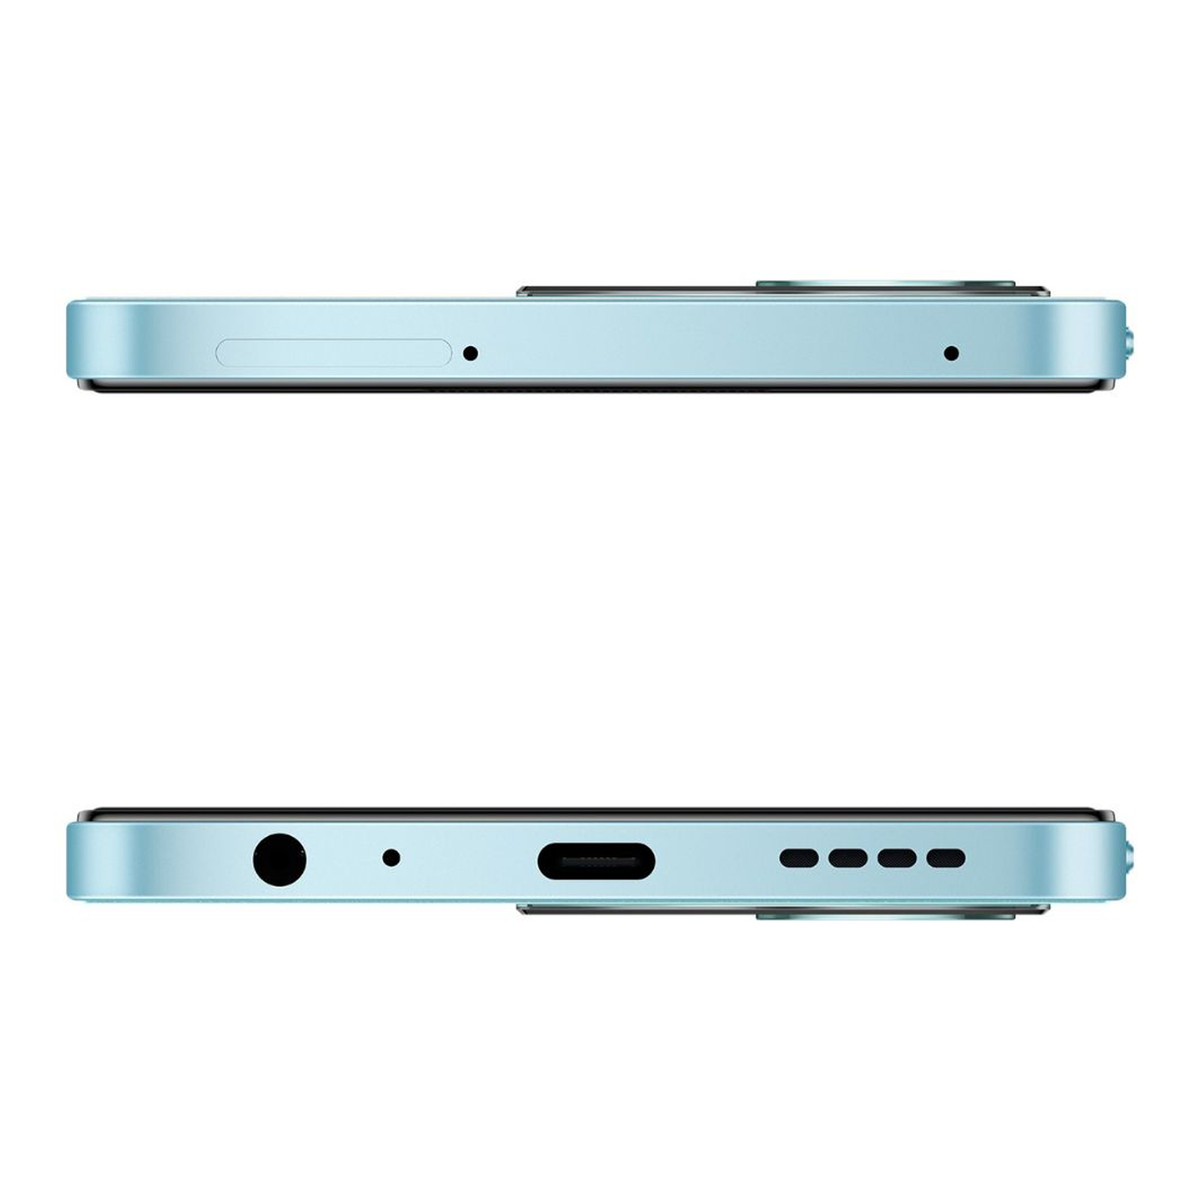 Vivo Y22 Dual SIM 4G Smart Phone, 4 GB RAM, 128 GB storage, Metaverse Green